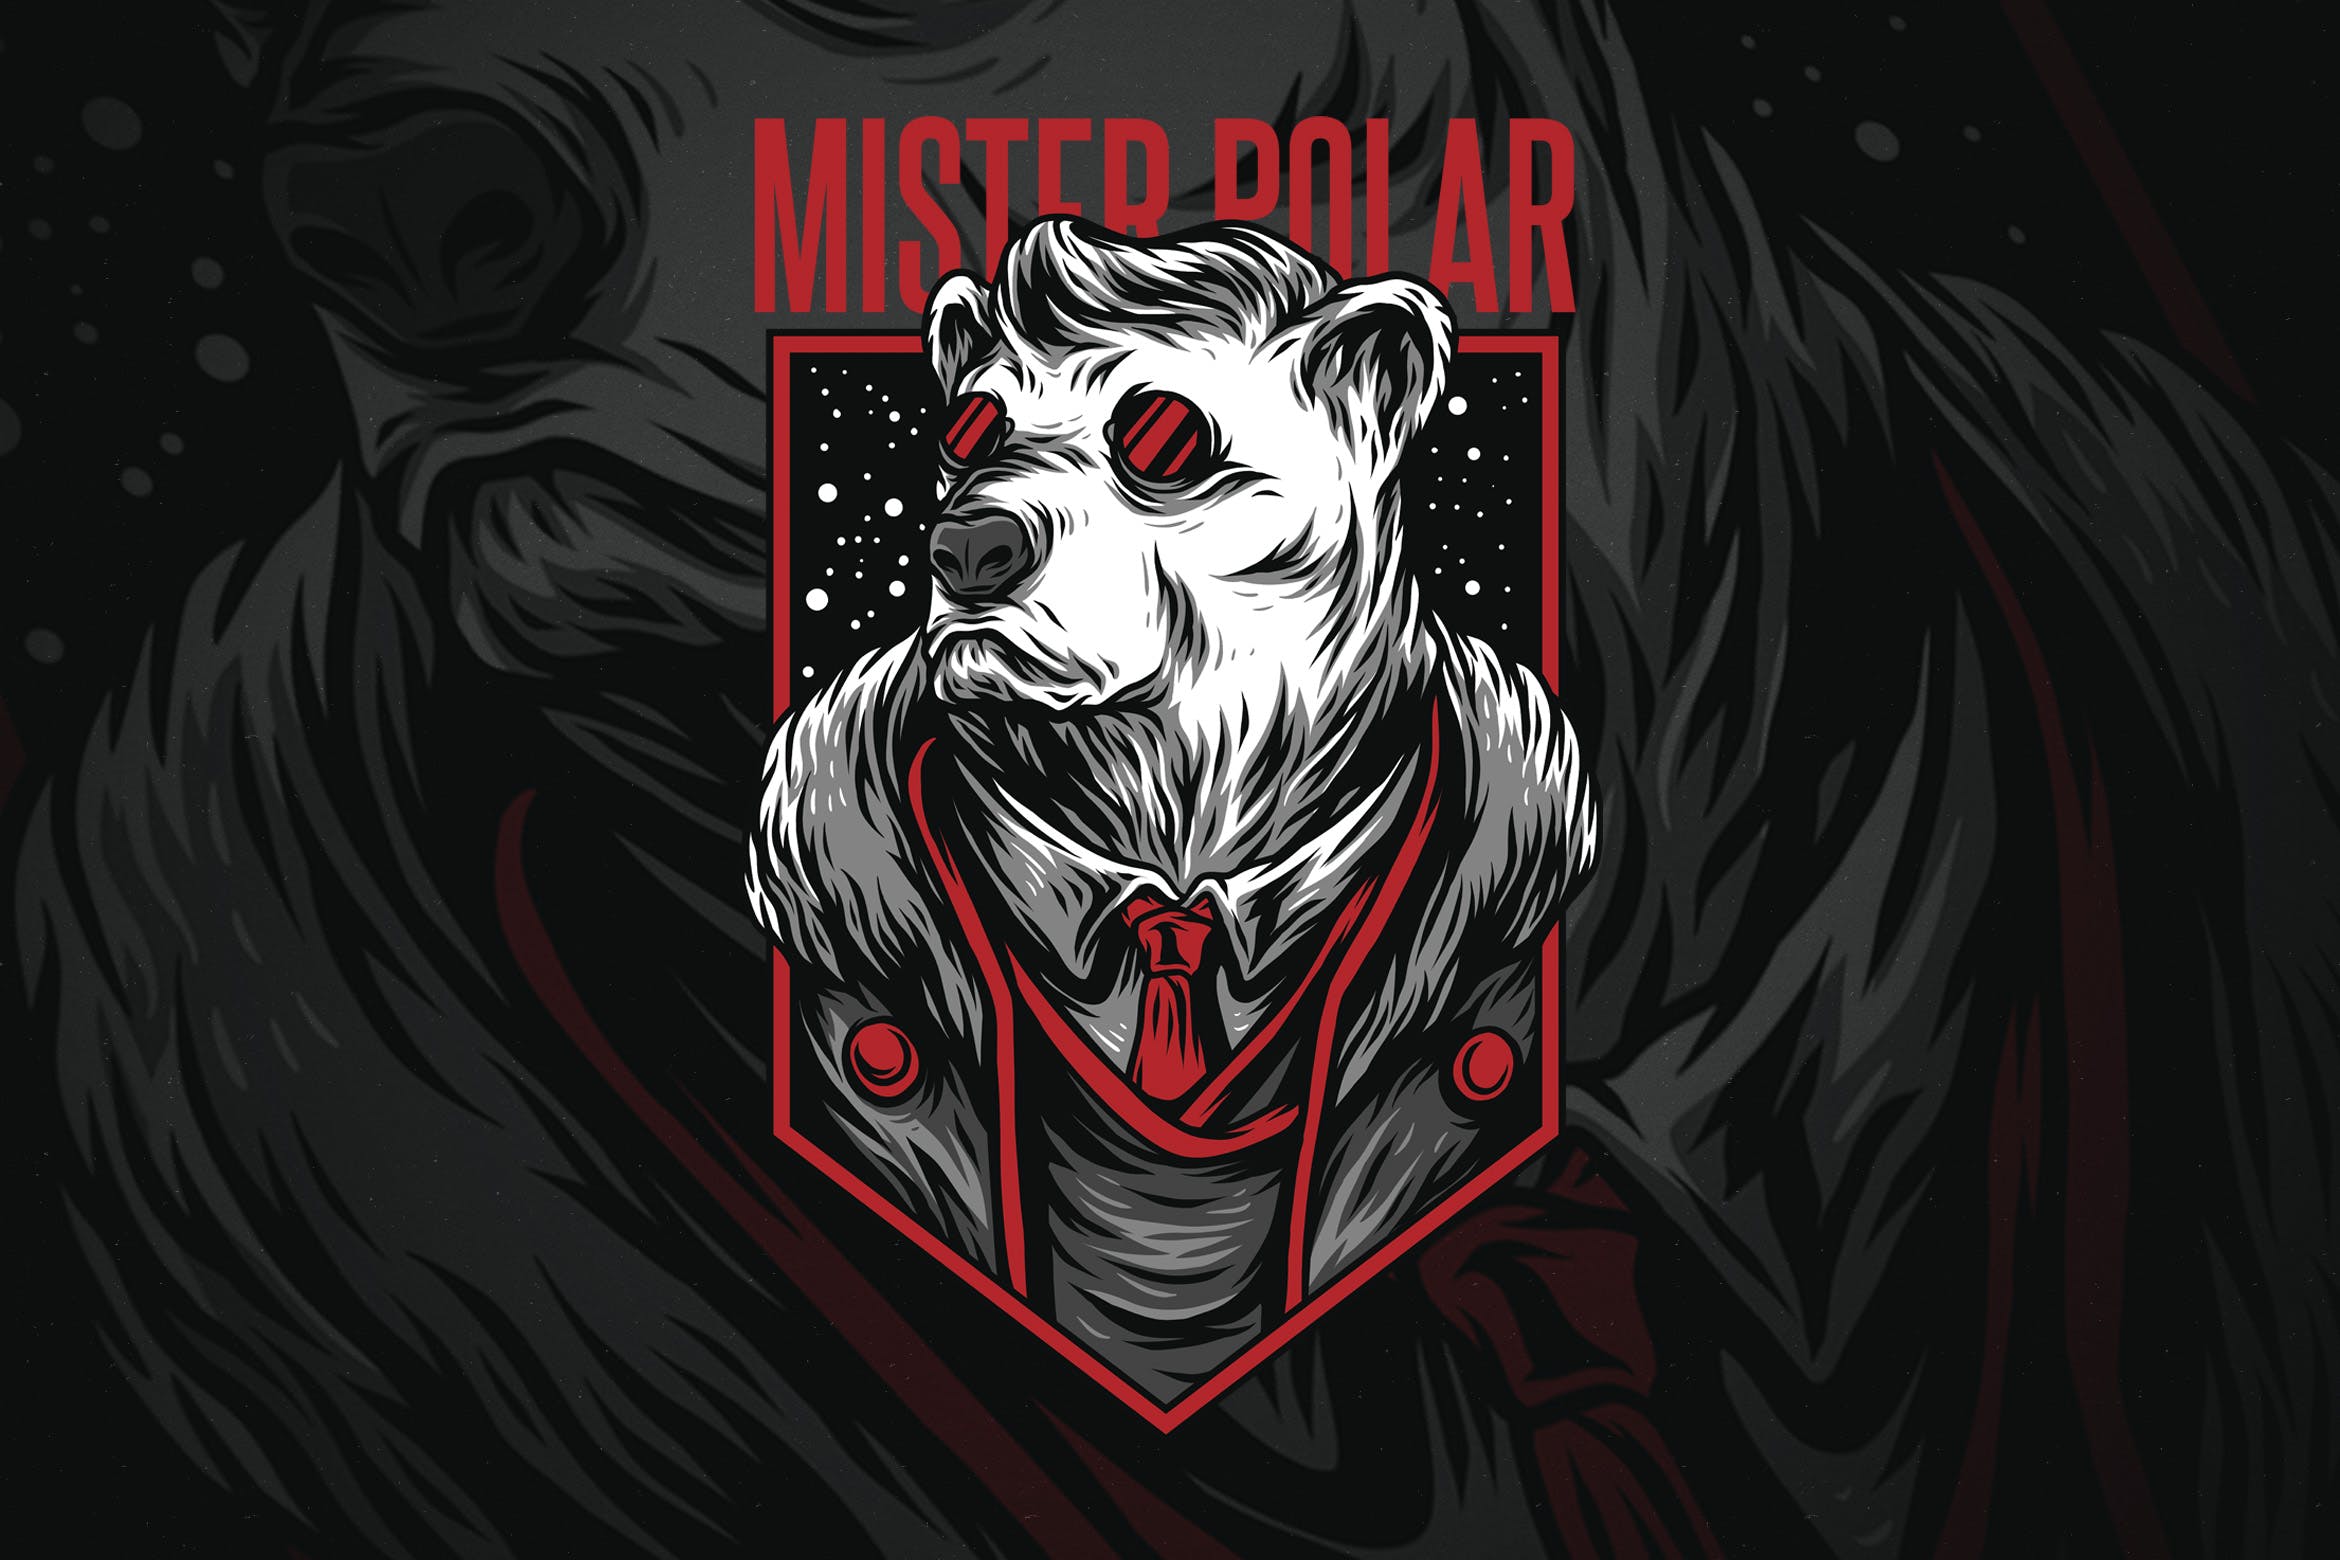 极地先生潮牌T恤印花图案非凡图库精选设计素材 Mister Polar插图